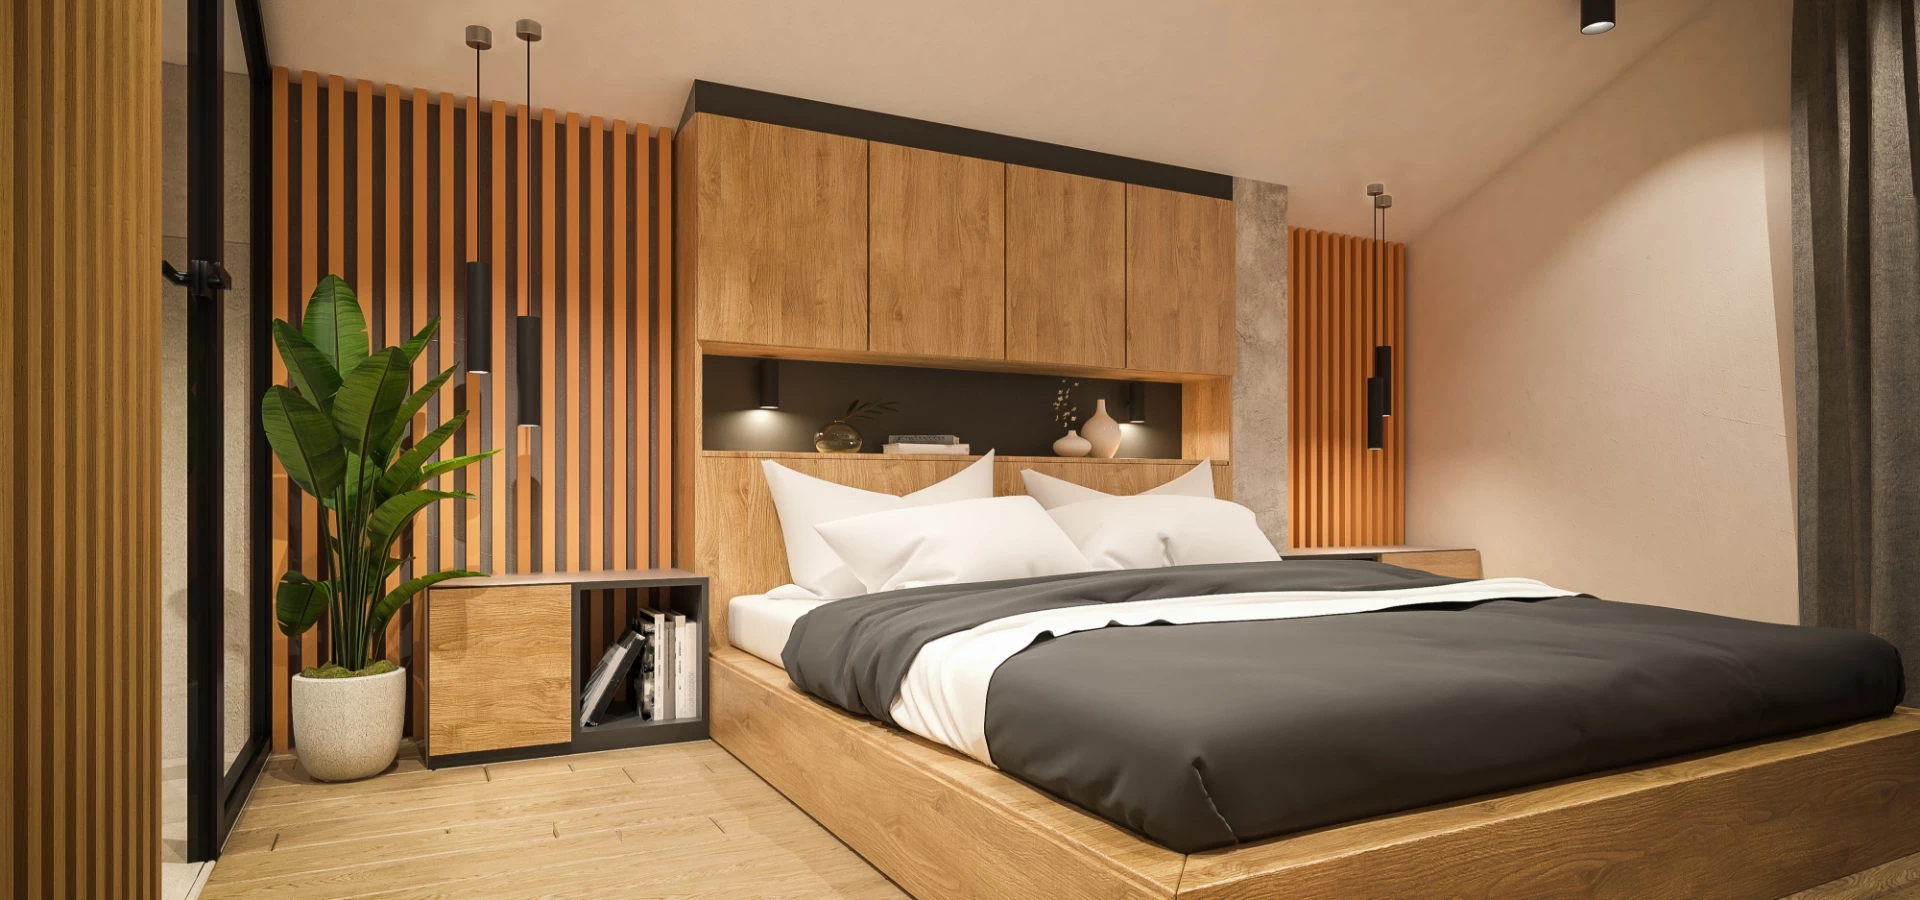 drewniane elementy na ścianie w sypialni